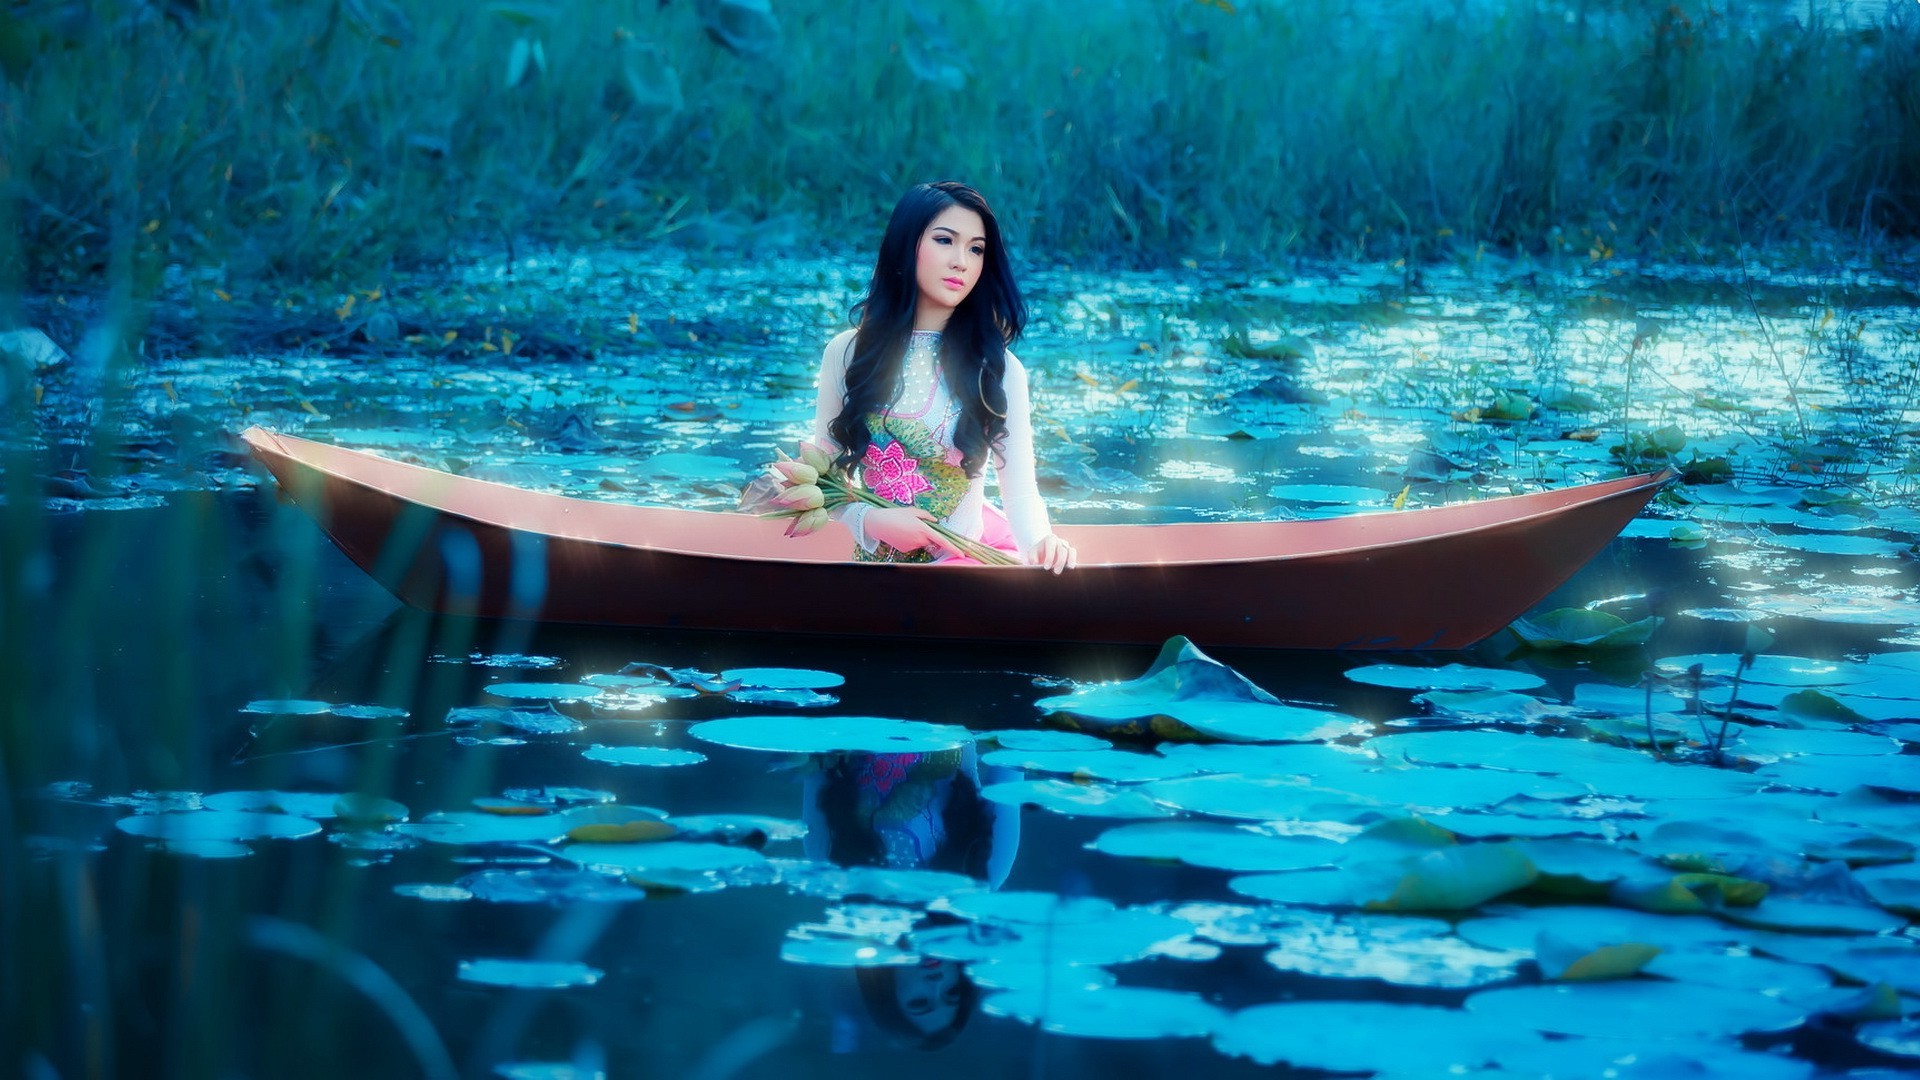 Asian, Women Outdoors, Model, Women, Boat, Fantasy Art Wallpaper